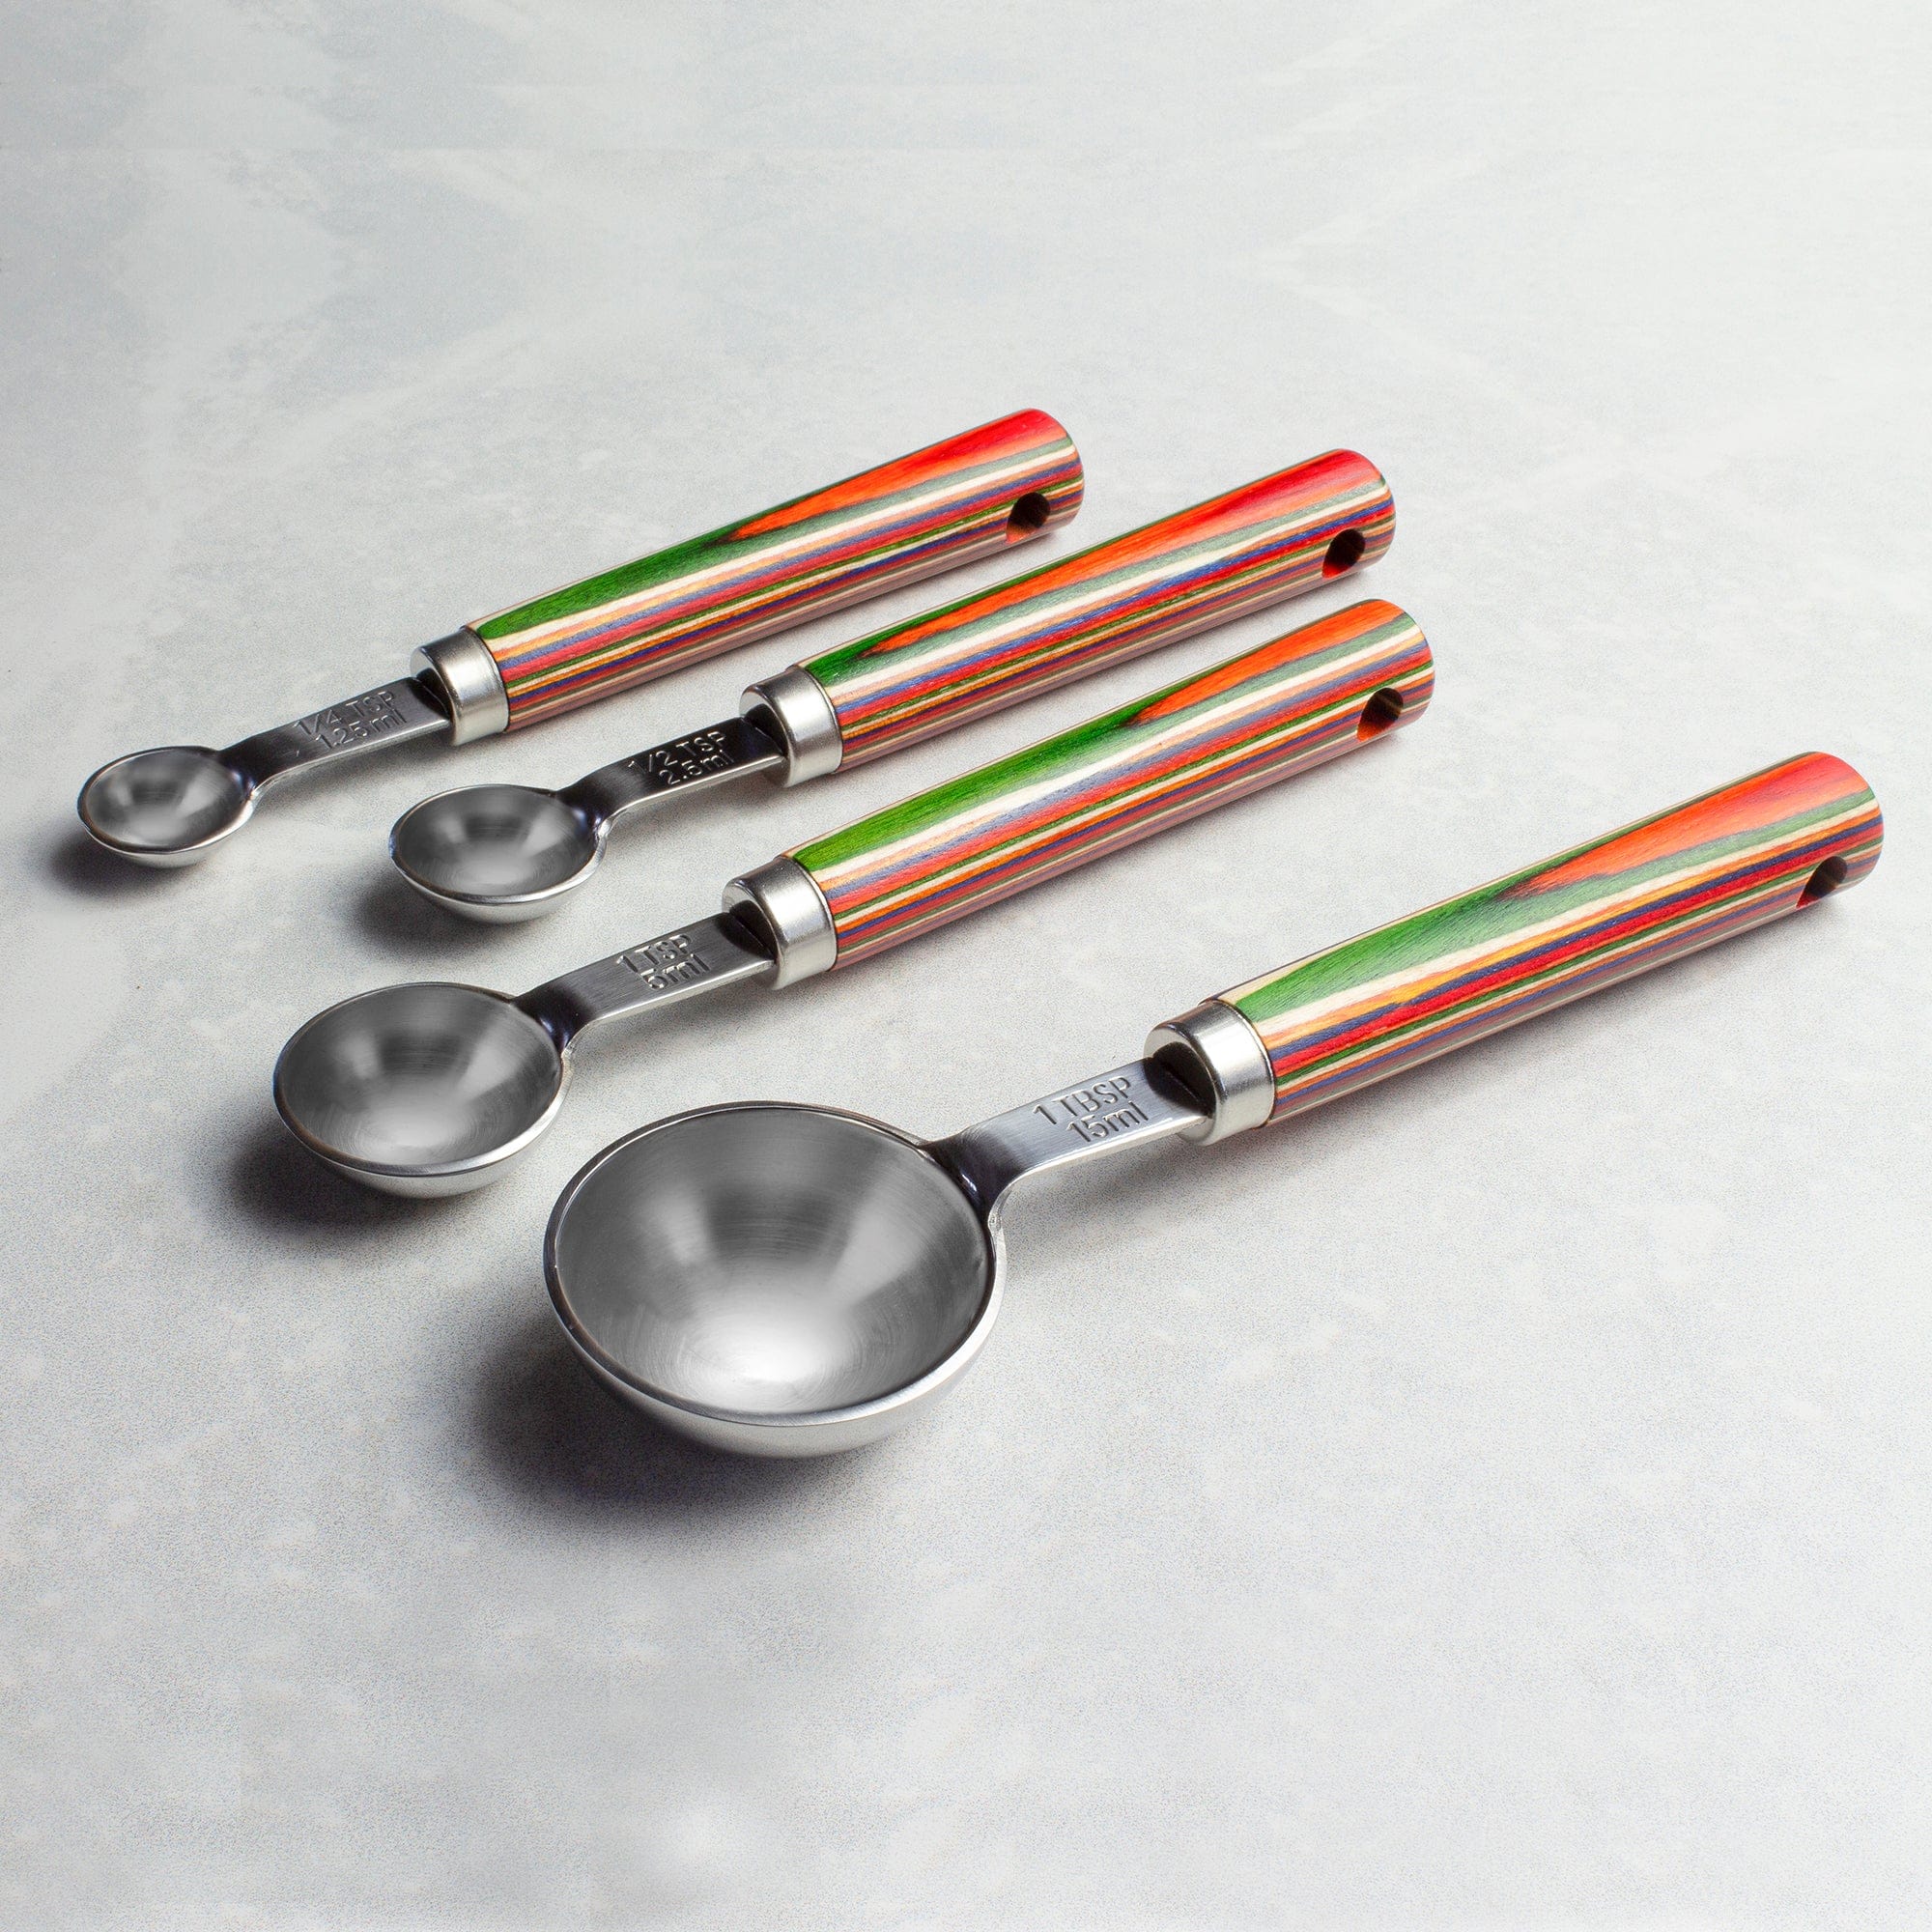 Measuring Spoon Set - Shop